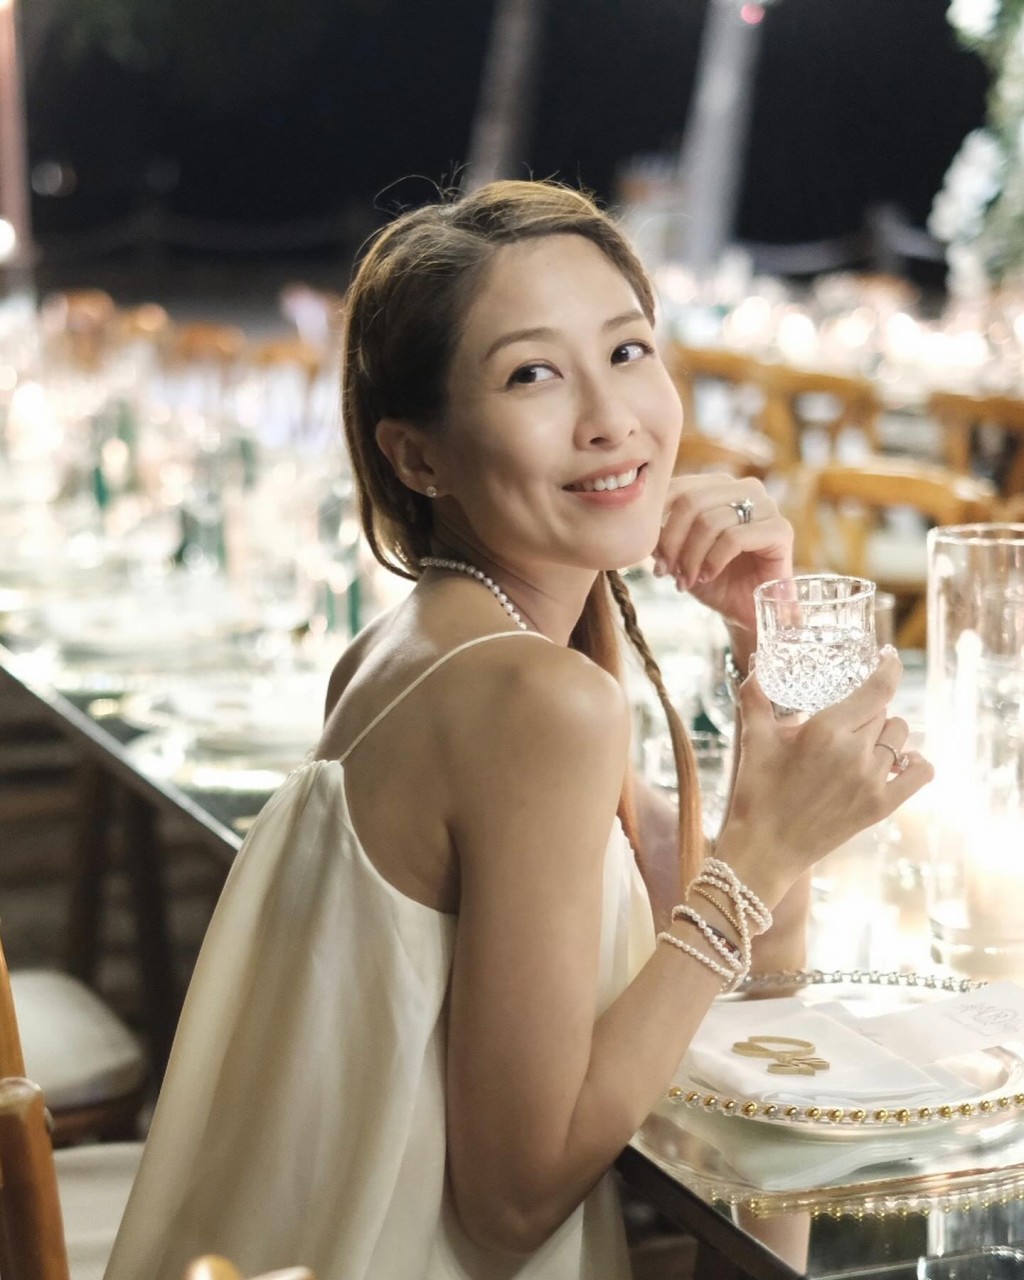 陈敏之出席婚宴时拍摄不少照片。